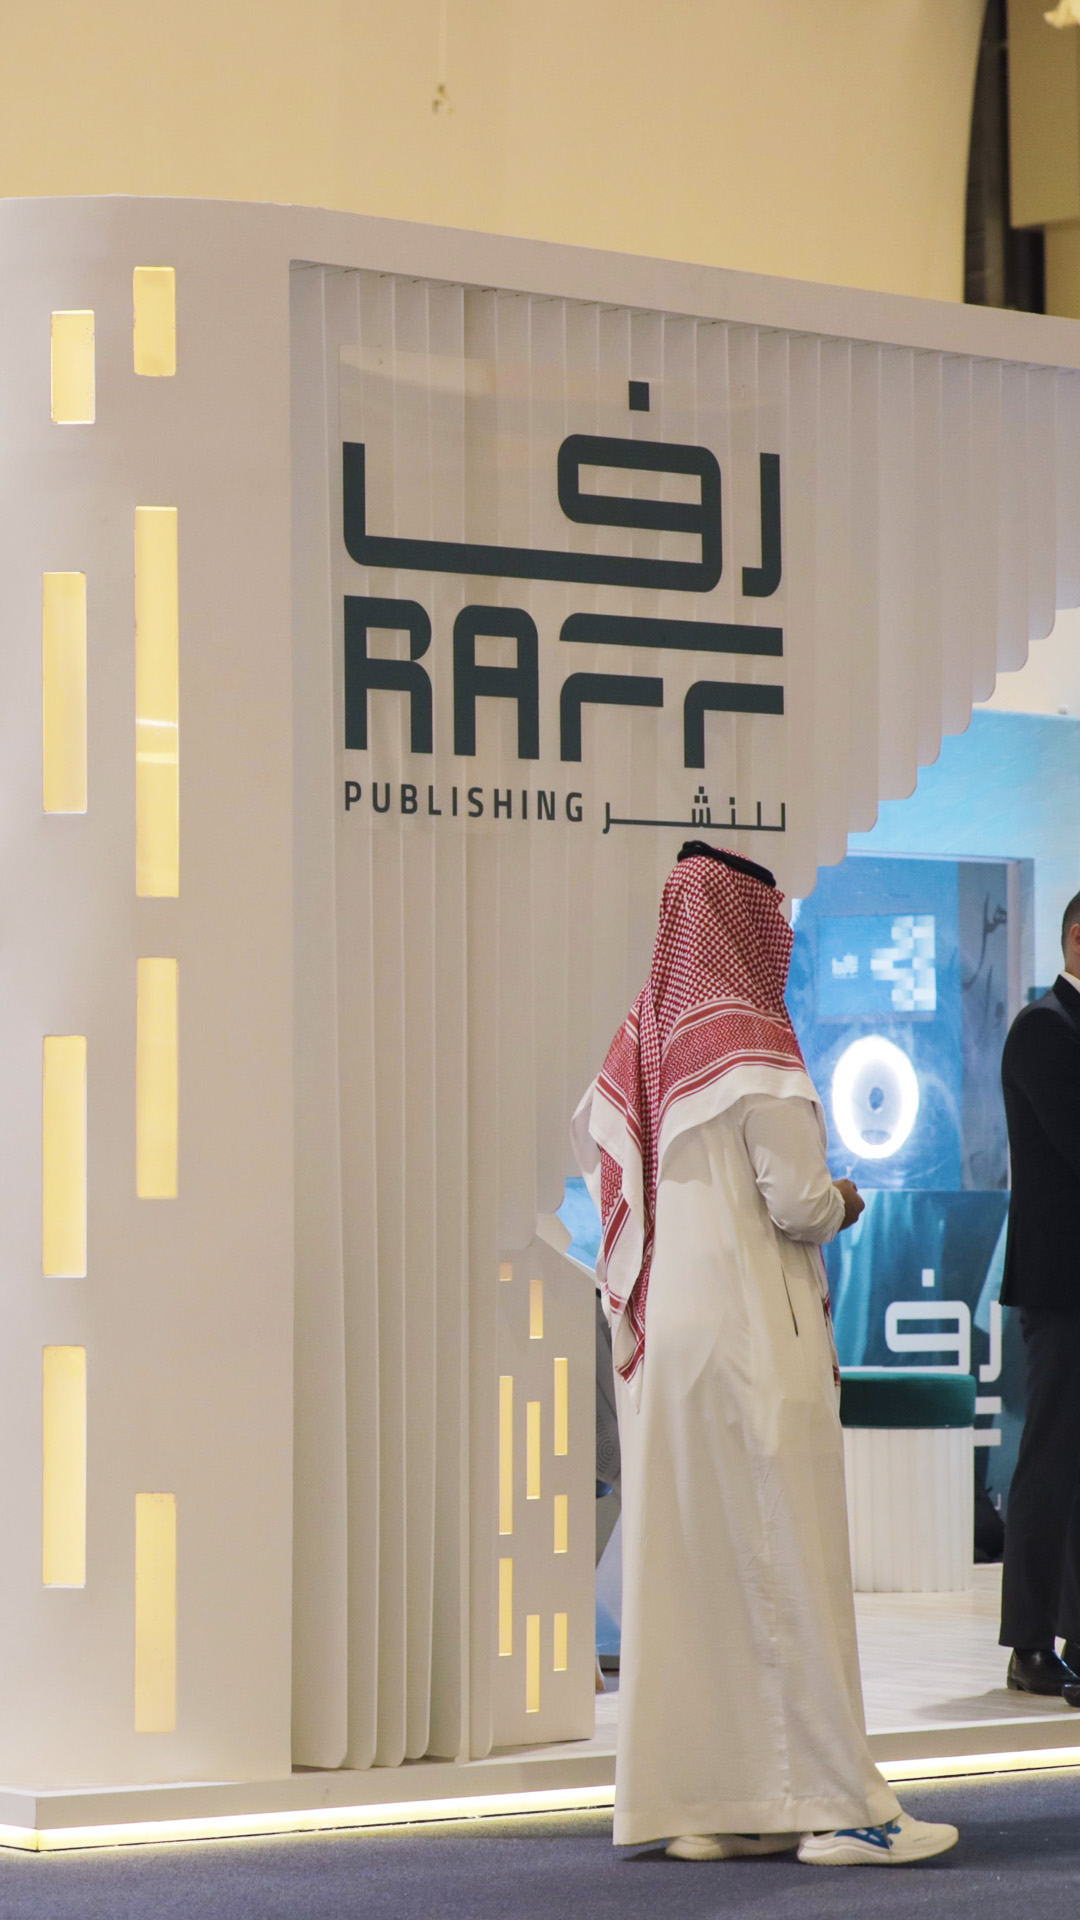 دار "رف" للنشر تُطلق الدفعة الأولى من إصداراتها باللغة العربية لمؤلّفين عالميين وتُعلِن عن أحدث الاتفاقيات مع دور النشر العالمية